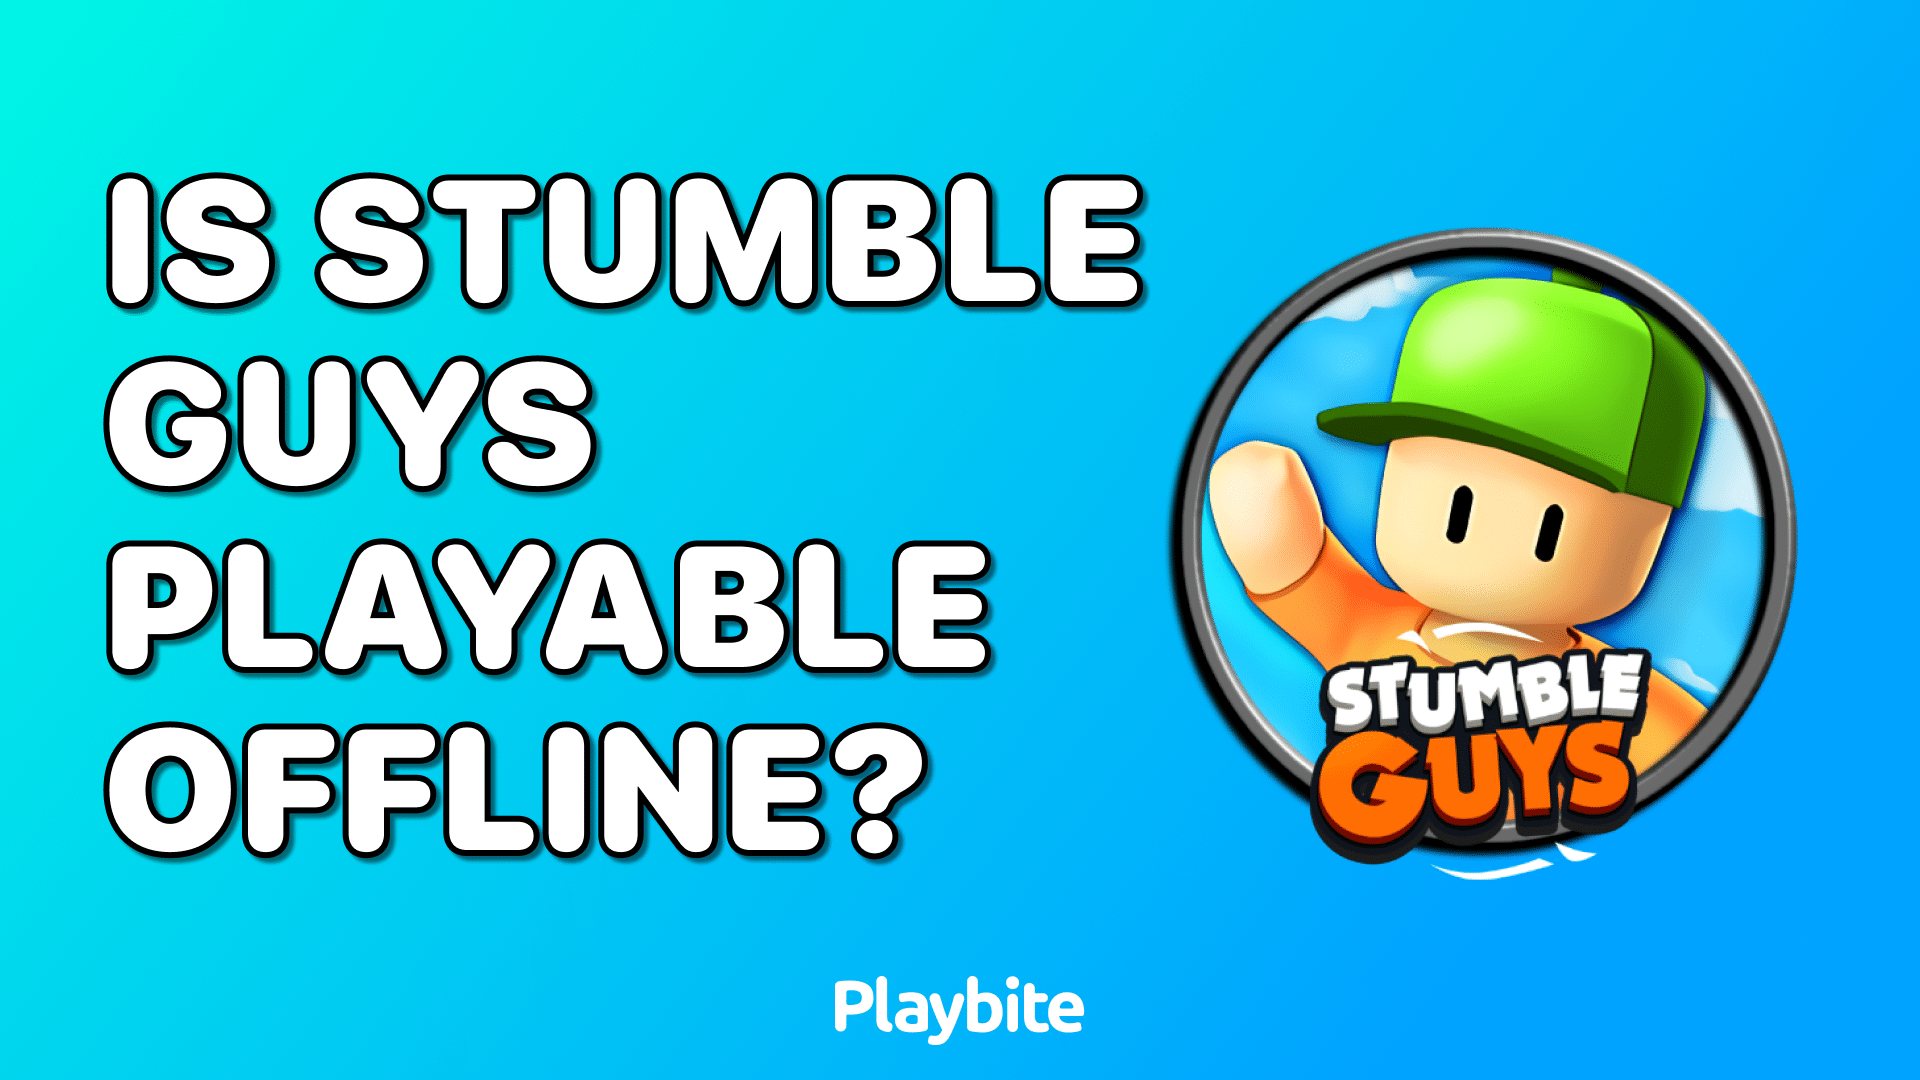 Is Stumble Guys Playable Offline?